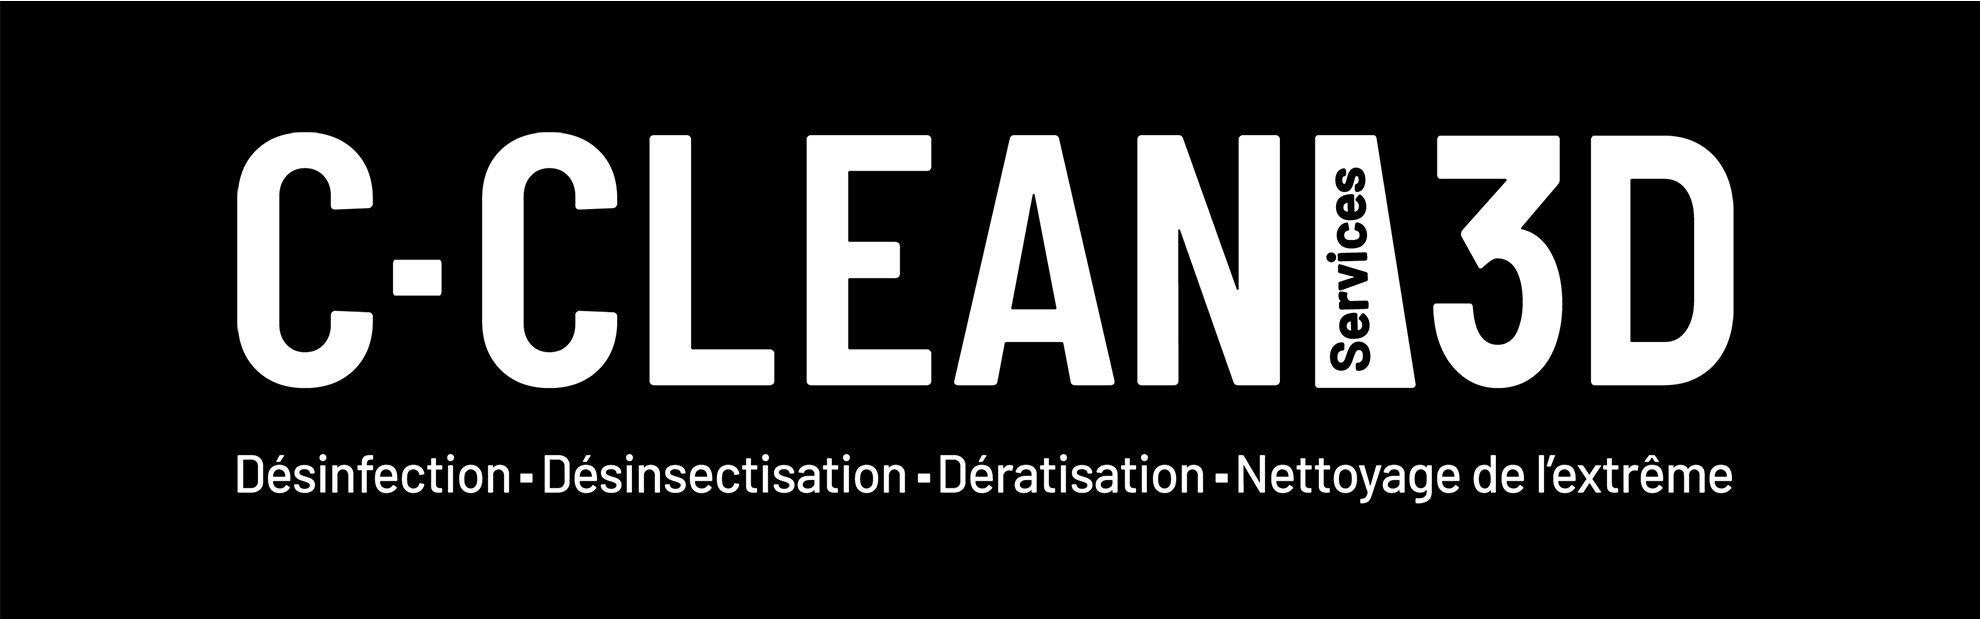 Logo de la société C-CLEAN Services 3D en lettres capitales version blanc sur fond noir.